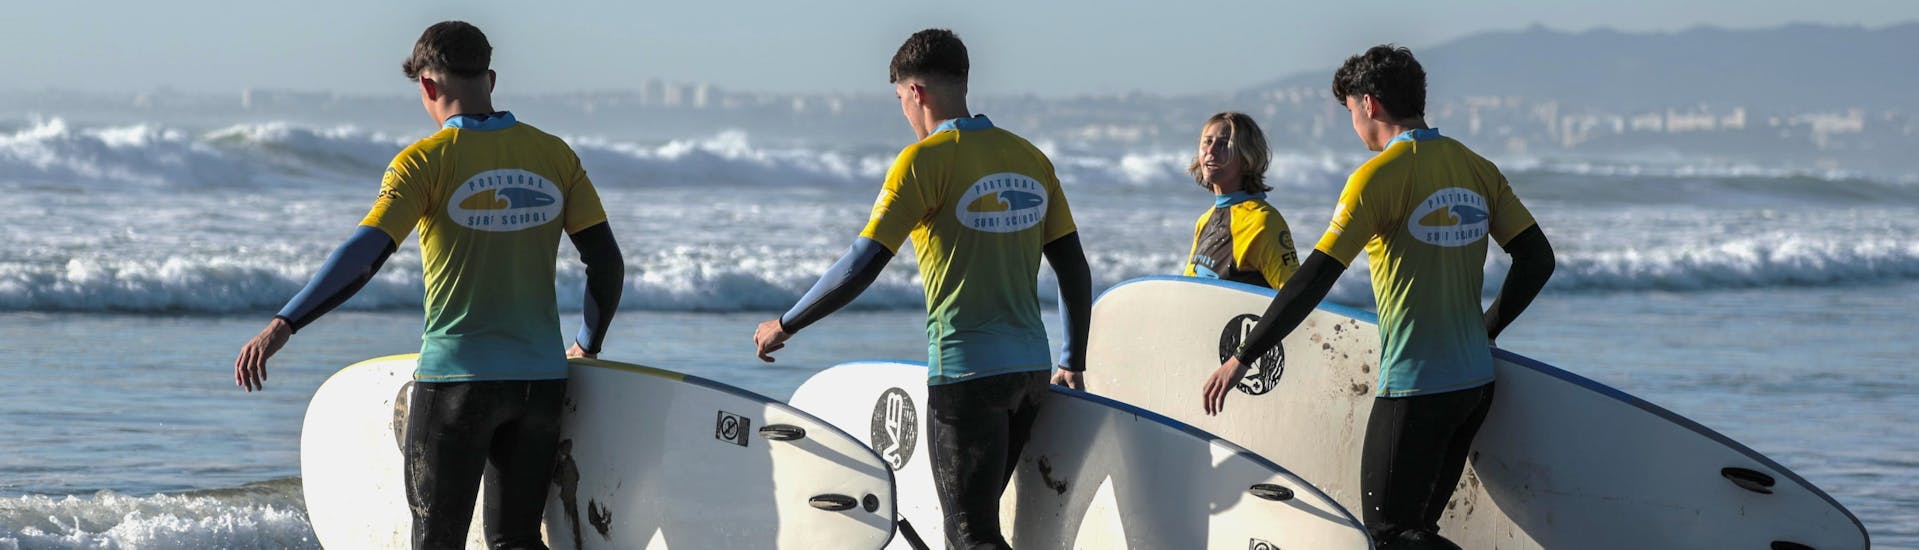 Lezioni private di surf a Costa da Caparica da 6 anni per tutti i livelli.